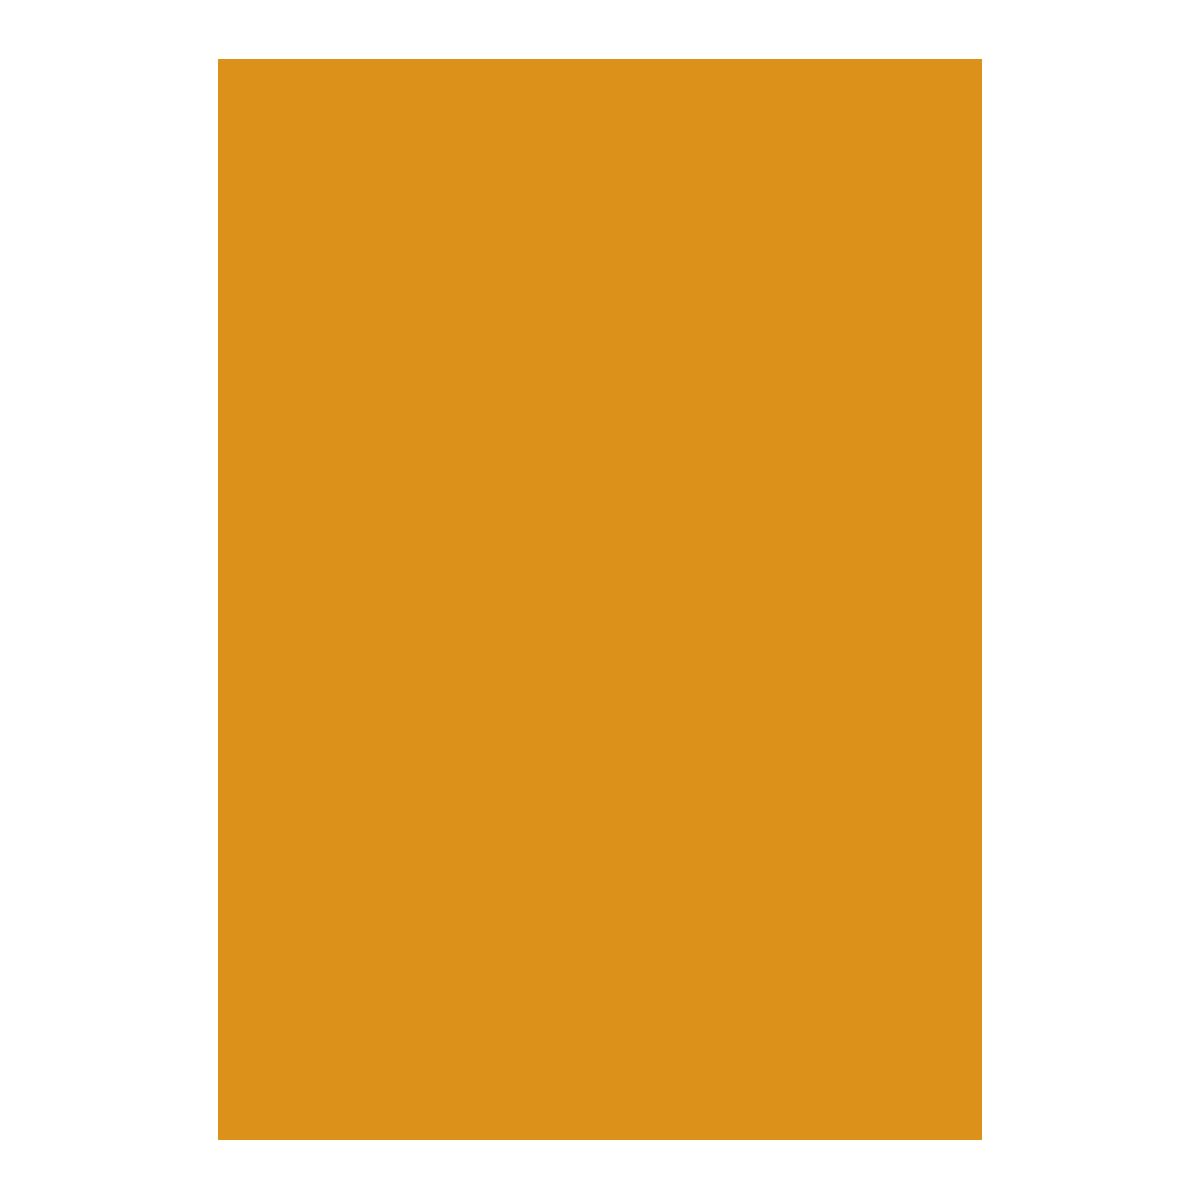 Arkusz piankowy Titanum Craft-Fun Series pianka dekoracyjna A4 5 szt. kolor: pomarańczowy 5 ark. (6129)